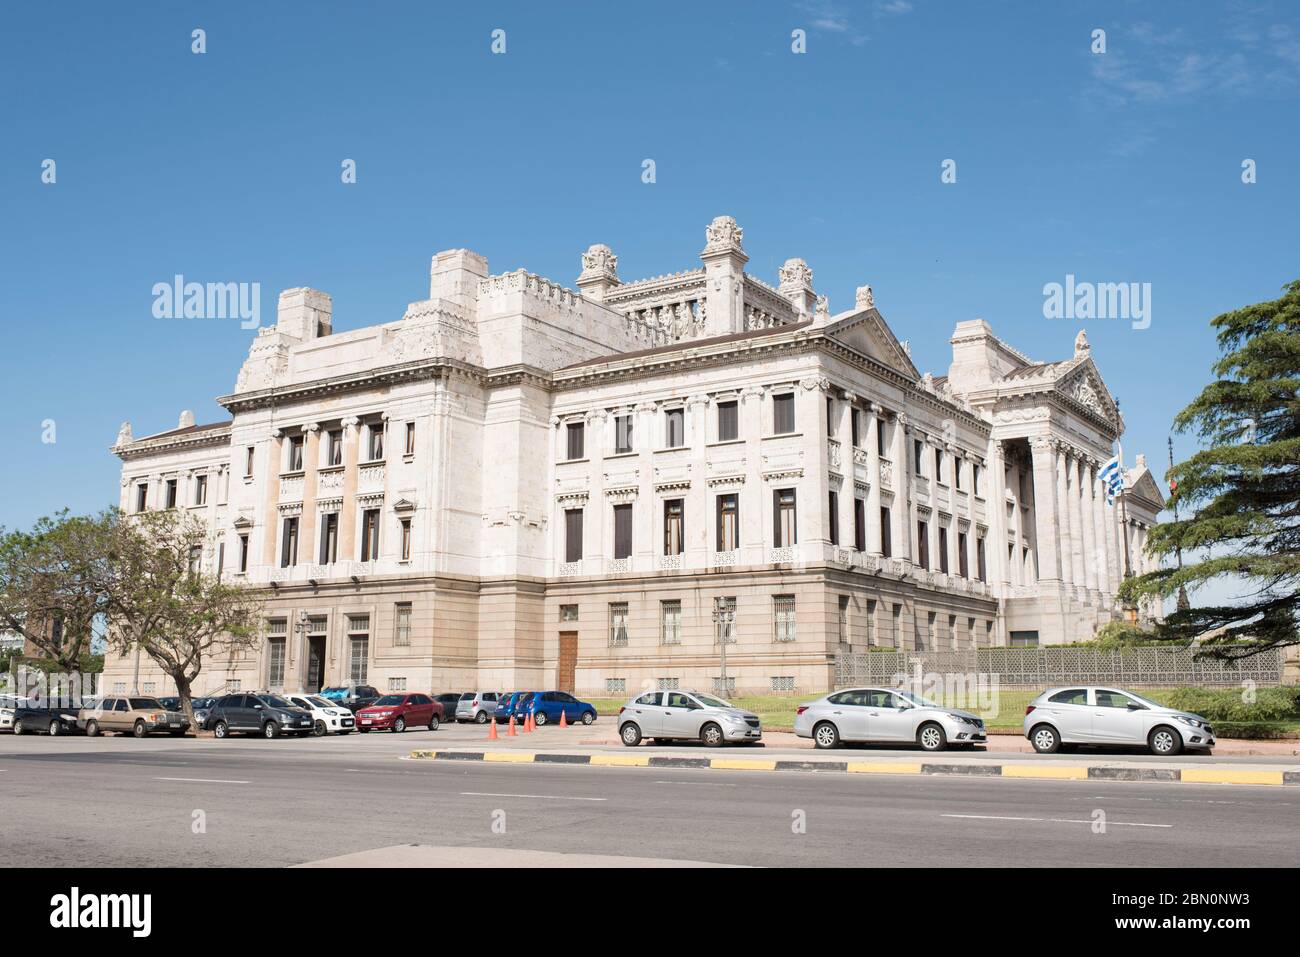 Montevideo / Uruguay, 28 décembre 2018 : vue extérieure du Palais législatif, siège du Parlement uruguayen. Banque D'Images